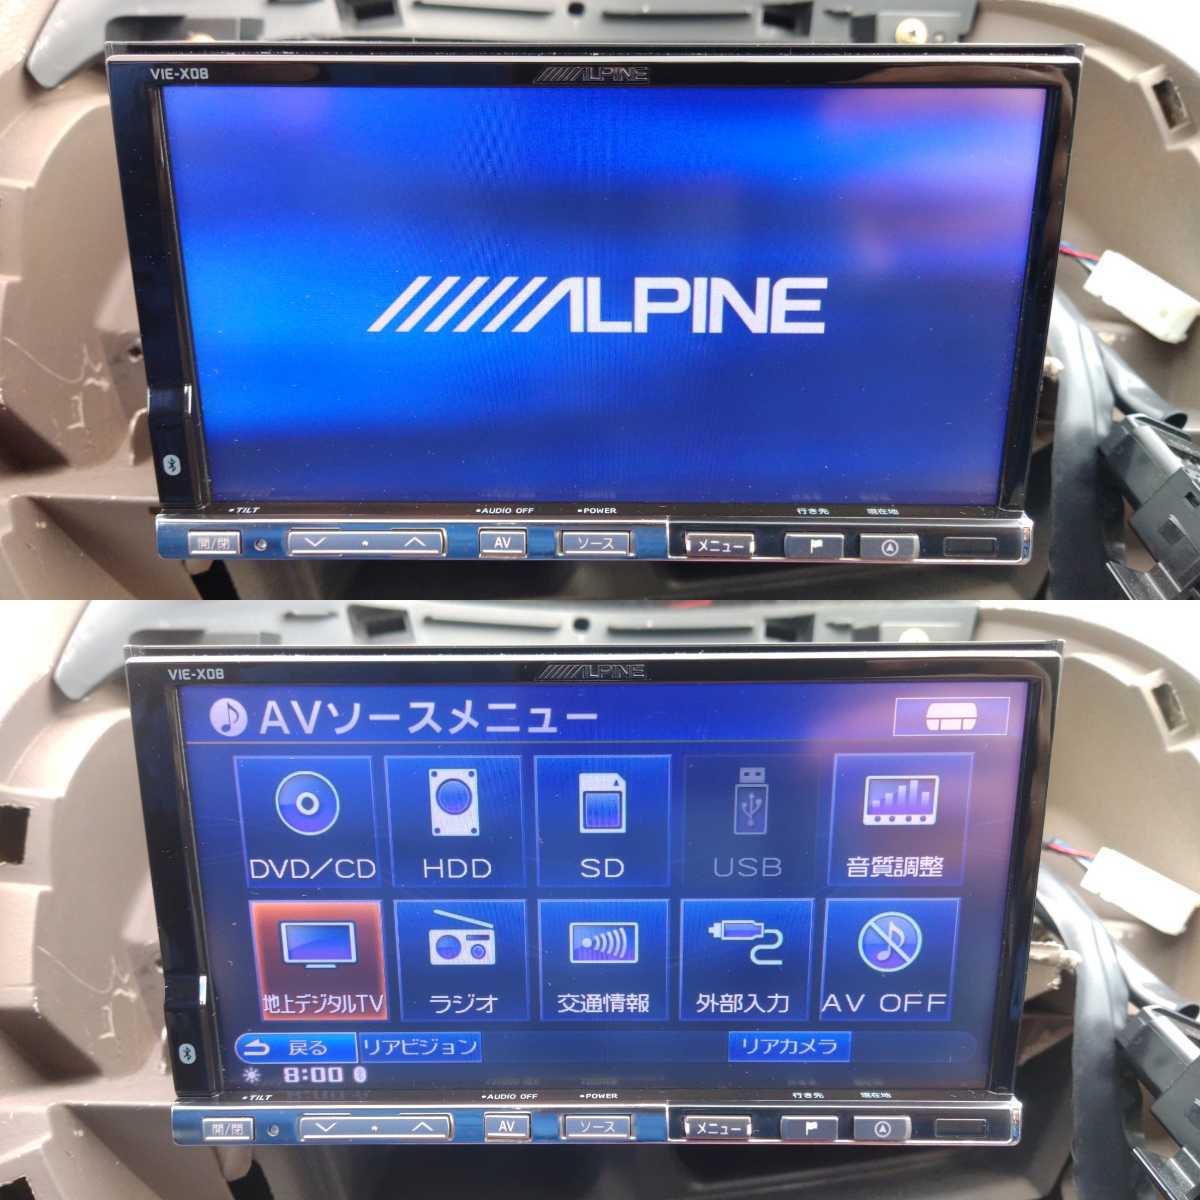 ALPINE HDDナビ VIE-X08 DVD テレビ フルセグ USB SDカード iPod ハンズフリー通話 CD録音 アルパイン